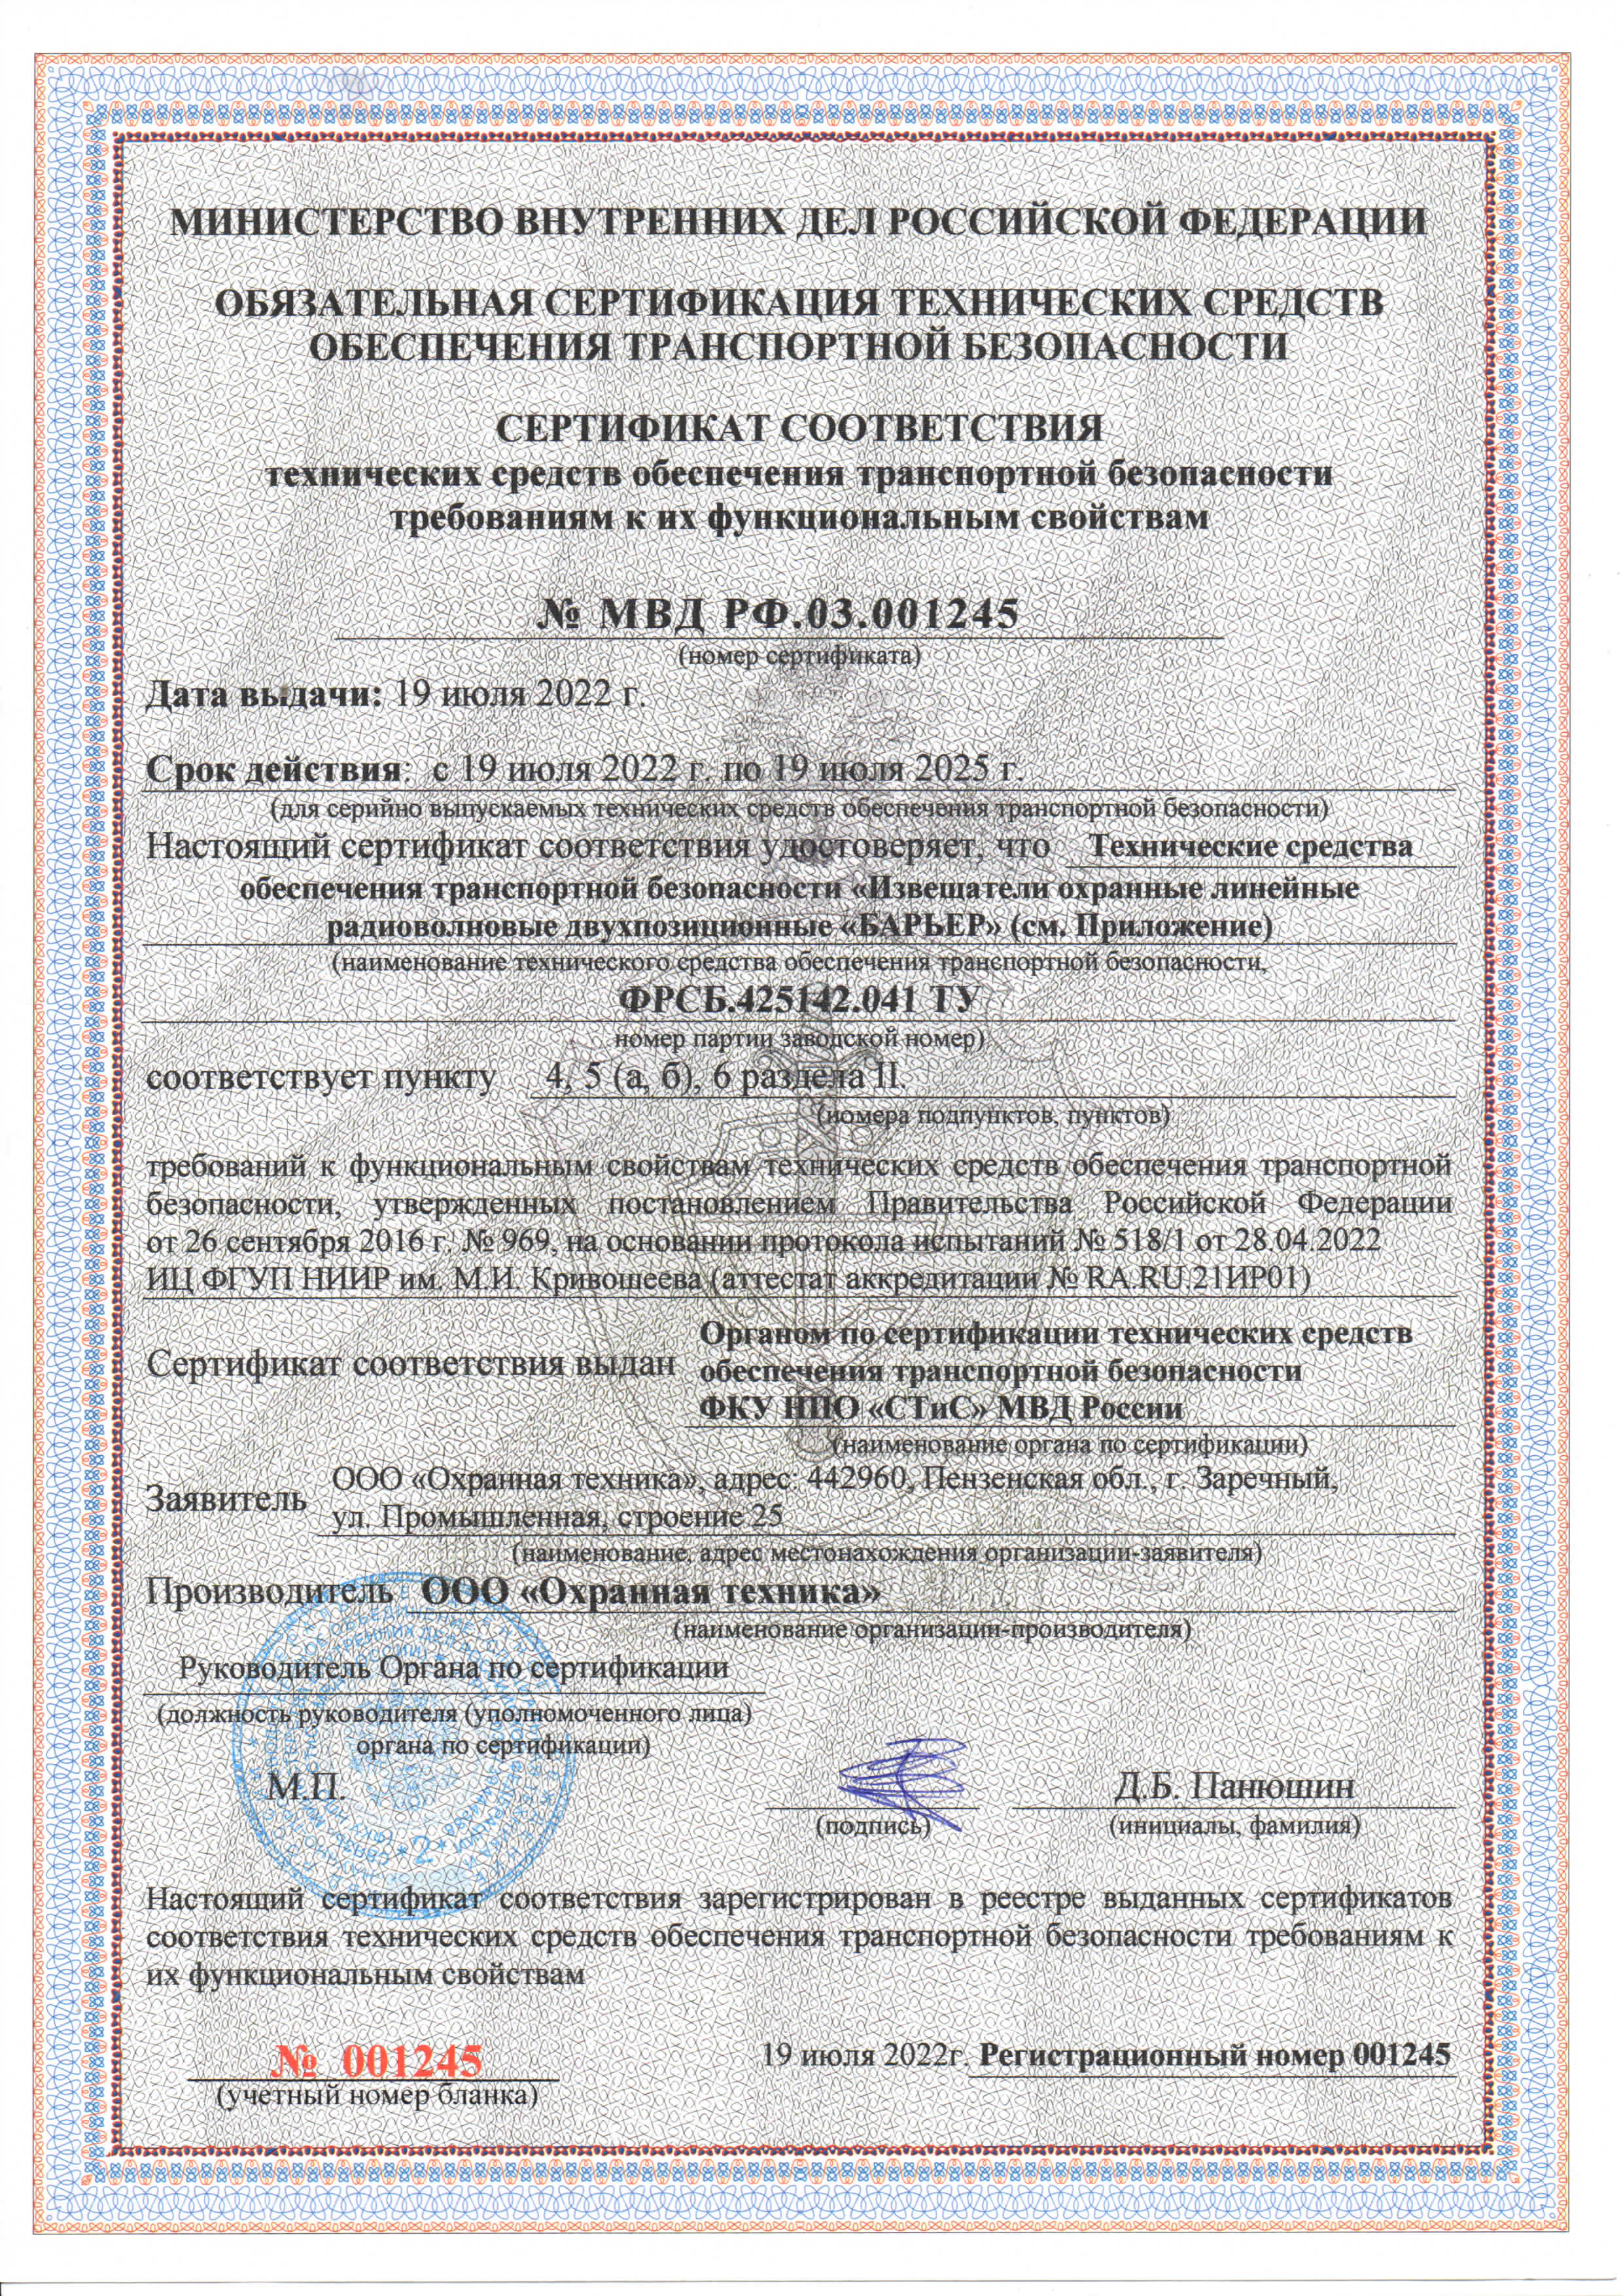 Продление сертификатов соответствия ТСО ТБ